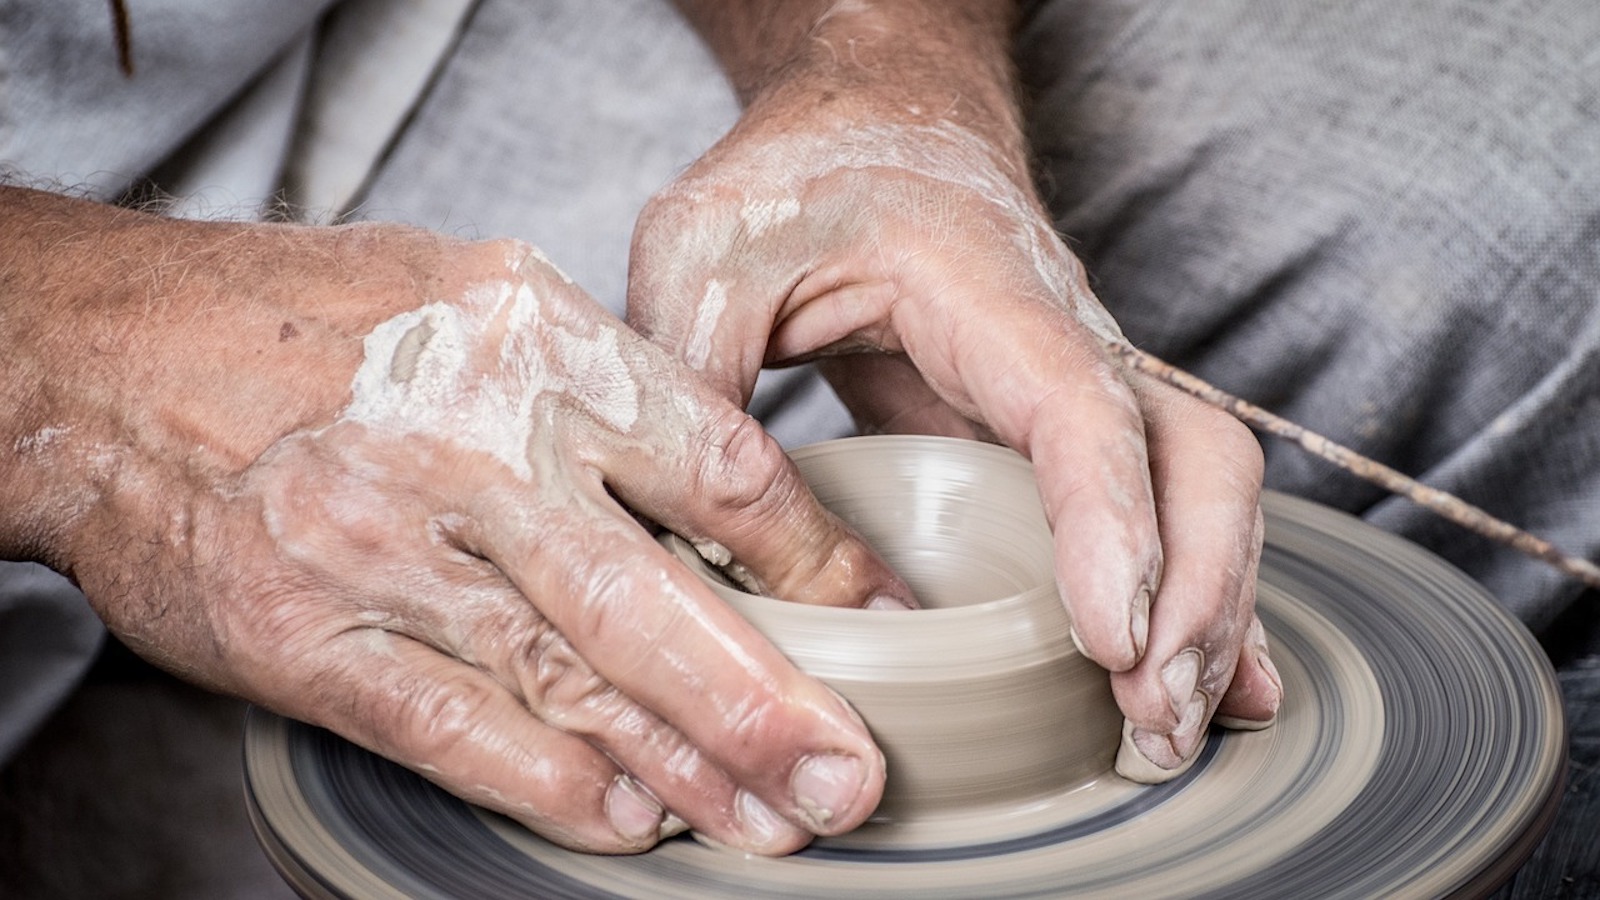 Lavorazione della ceramica